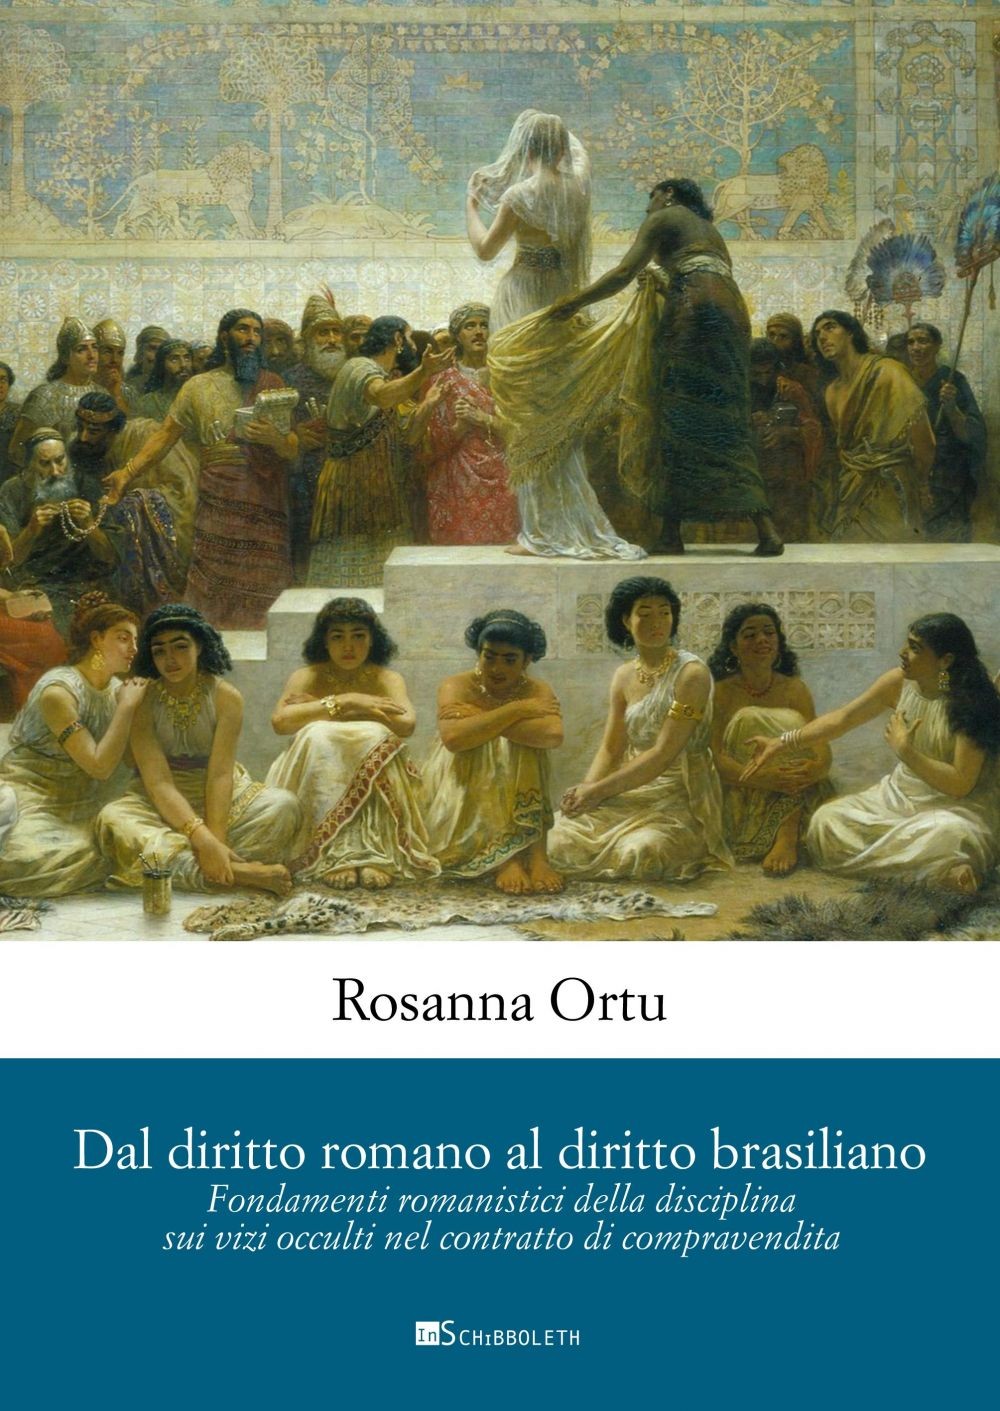 Dal diritto romano al diritto brasiliano - Librerie.coop